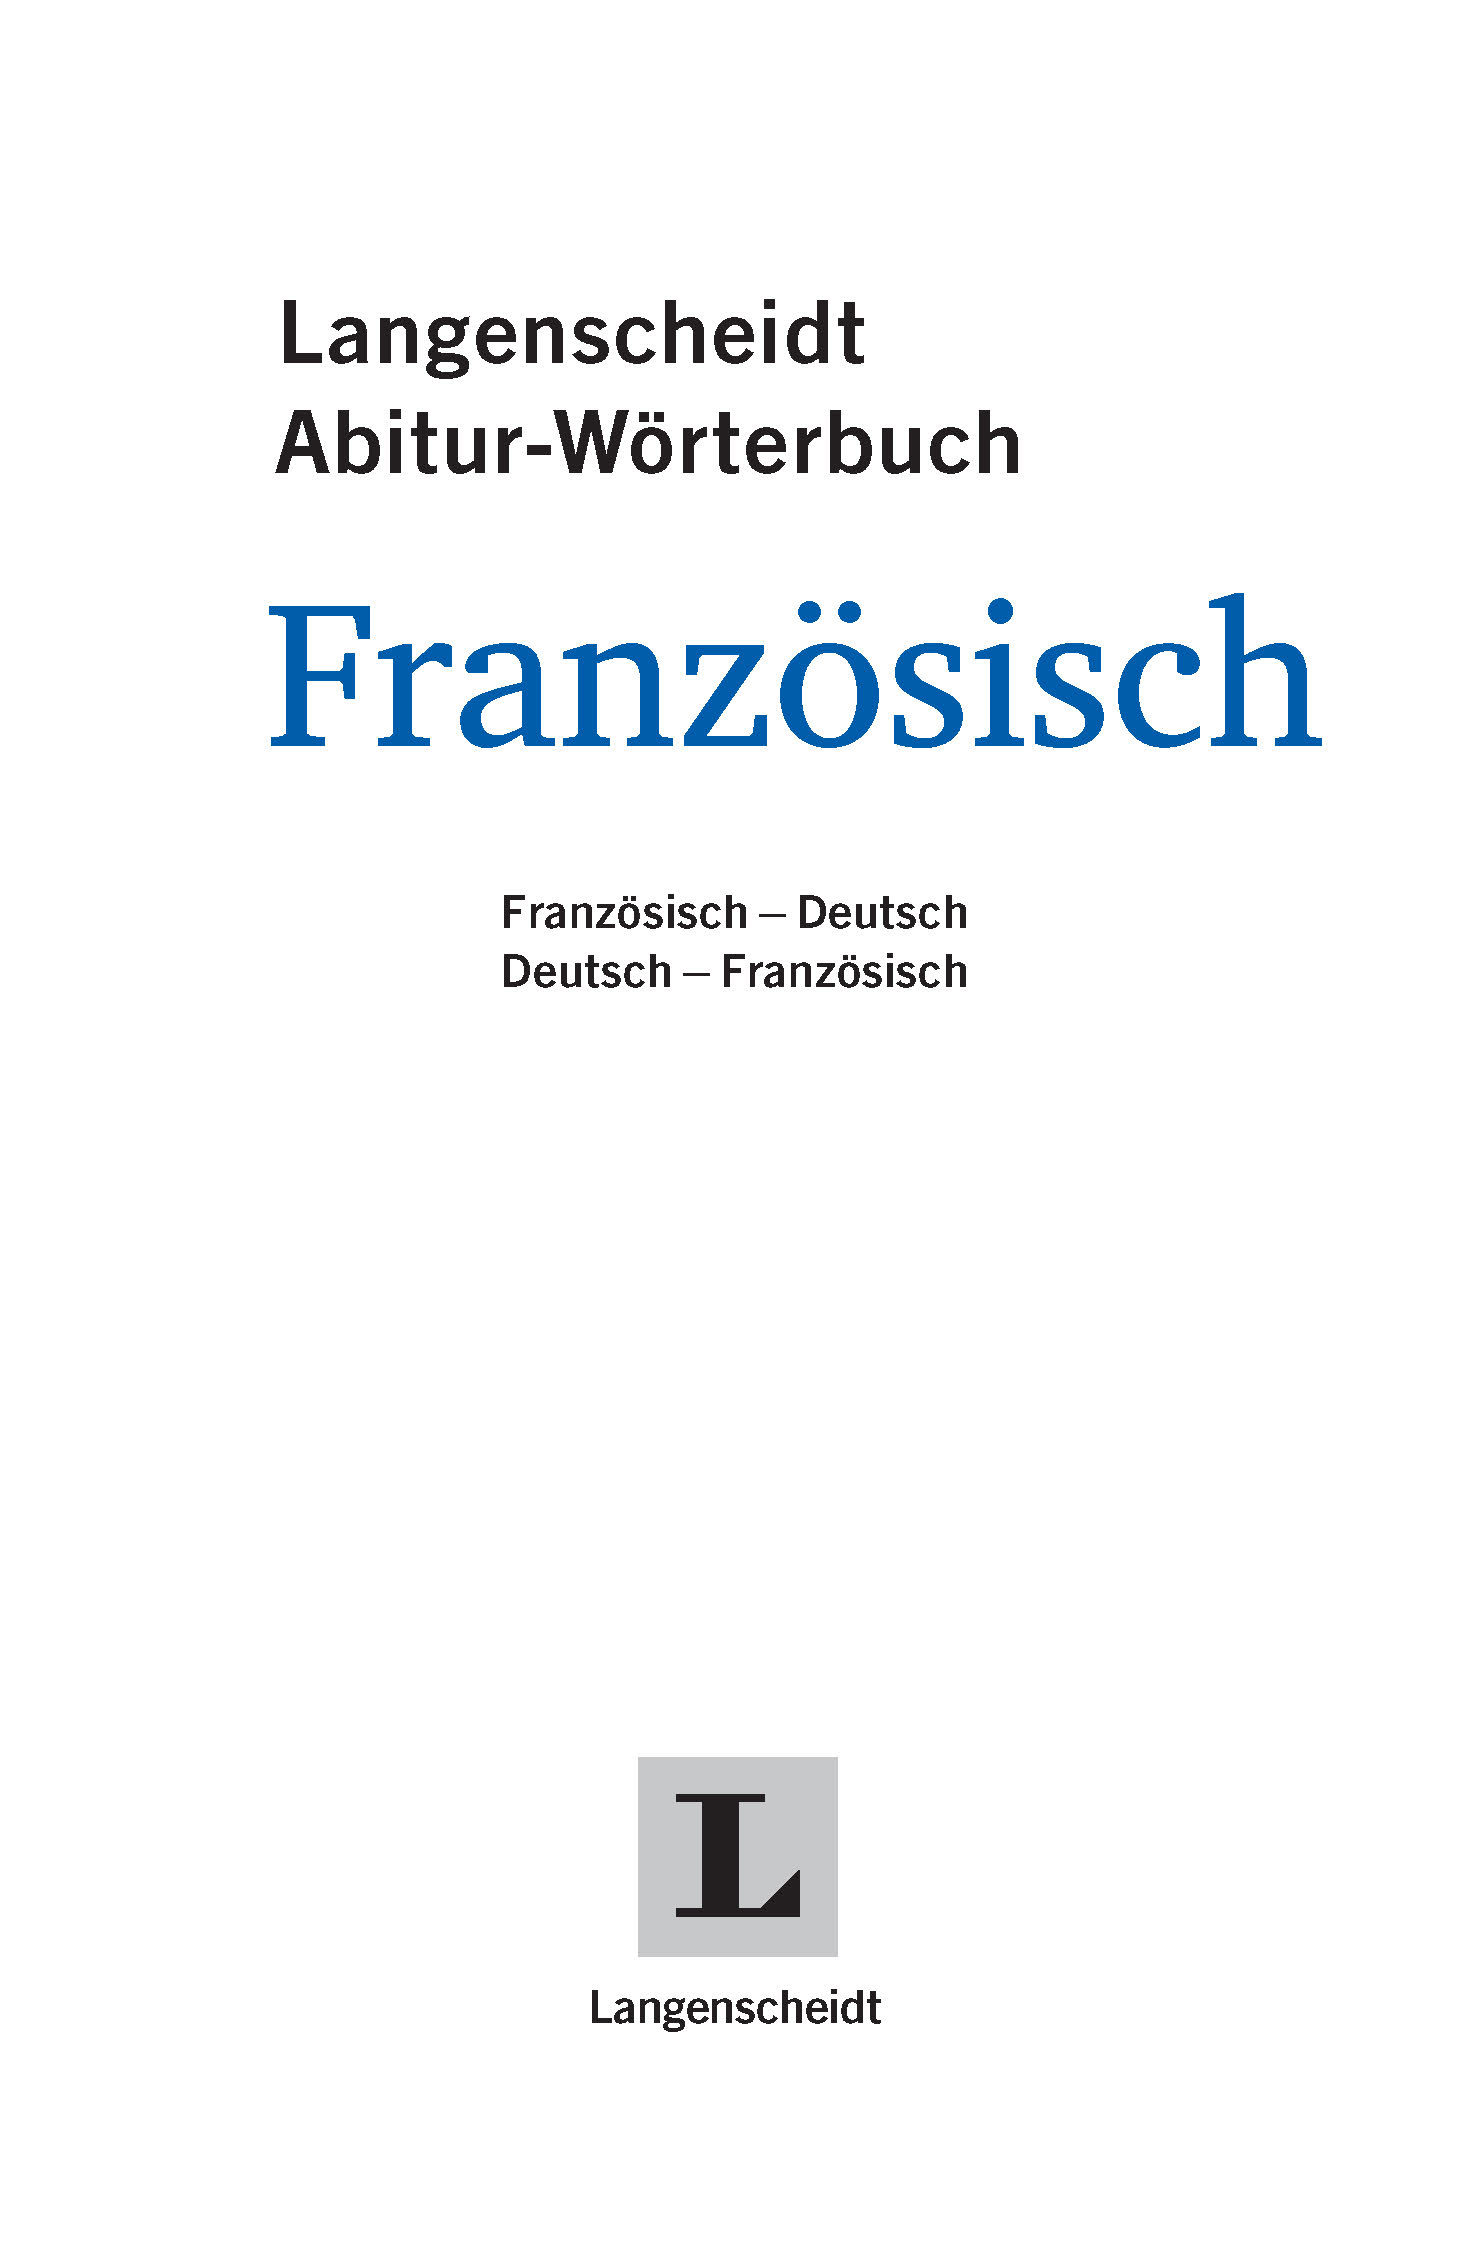 Langenscheidt Abitur-Wörterbuch Französisch Klausurausgabe